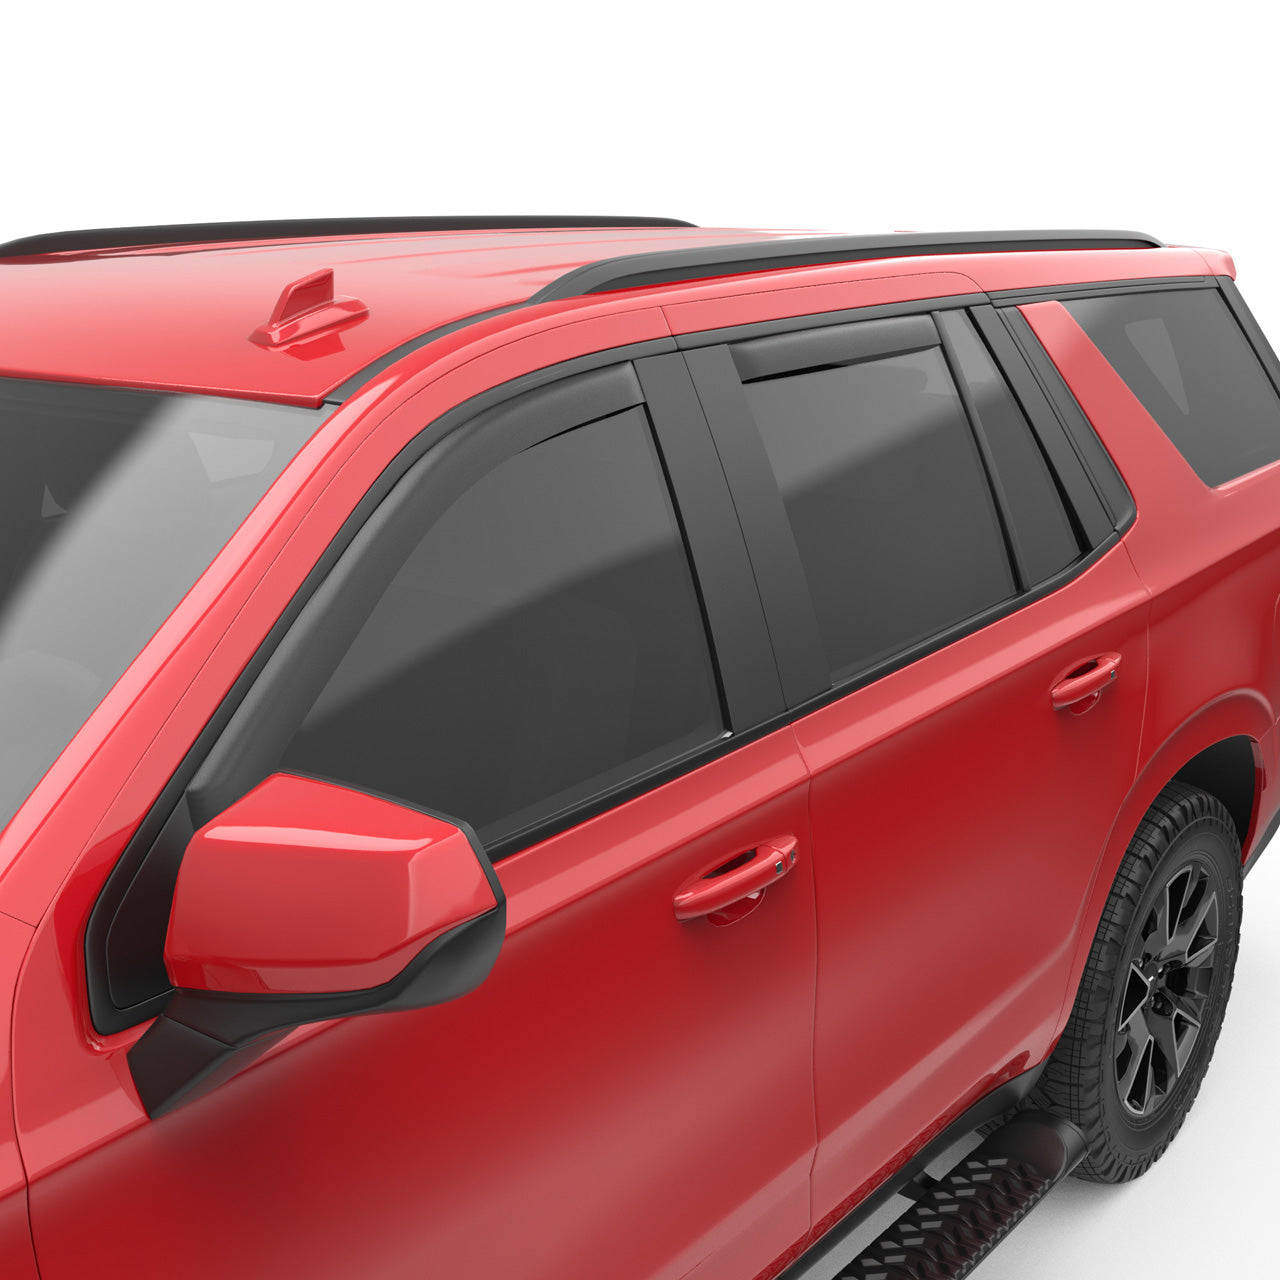 EGR In-channel Window Visors - Front & Rear Set Matte Black - 21-23 Chevrolet Tahoe